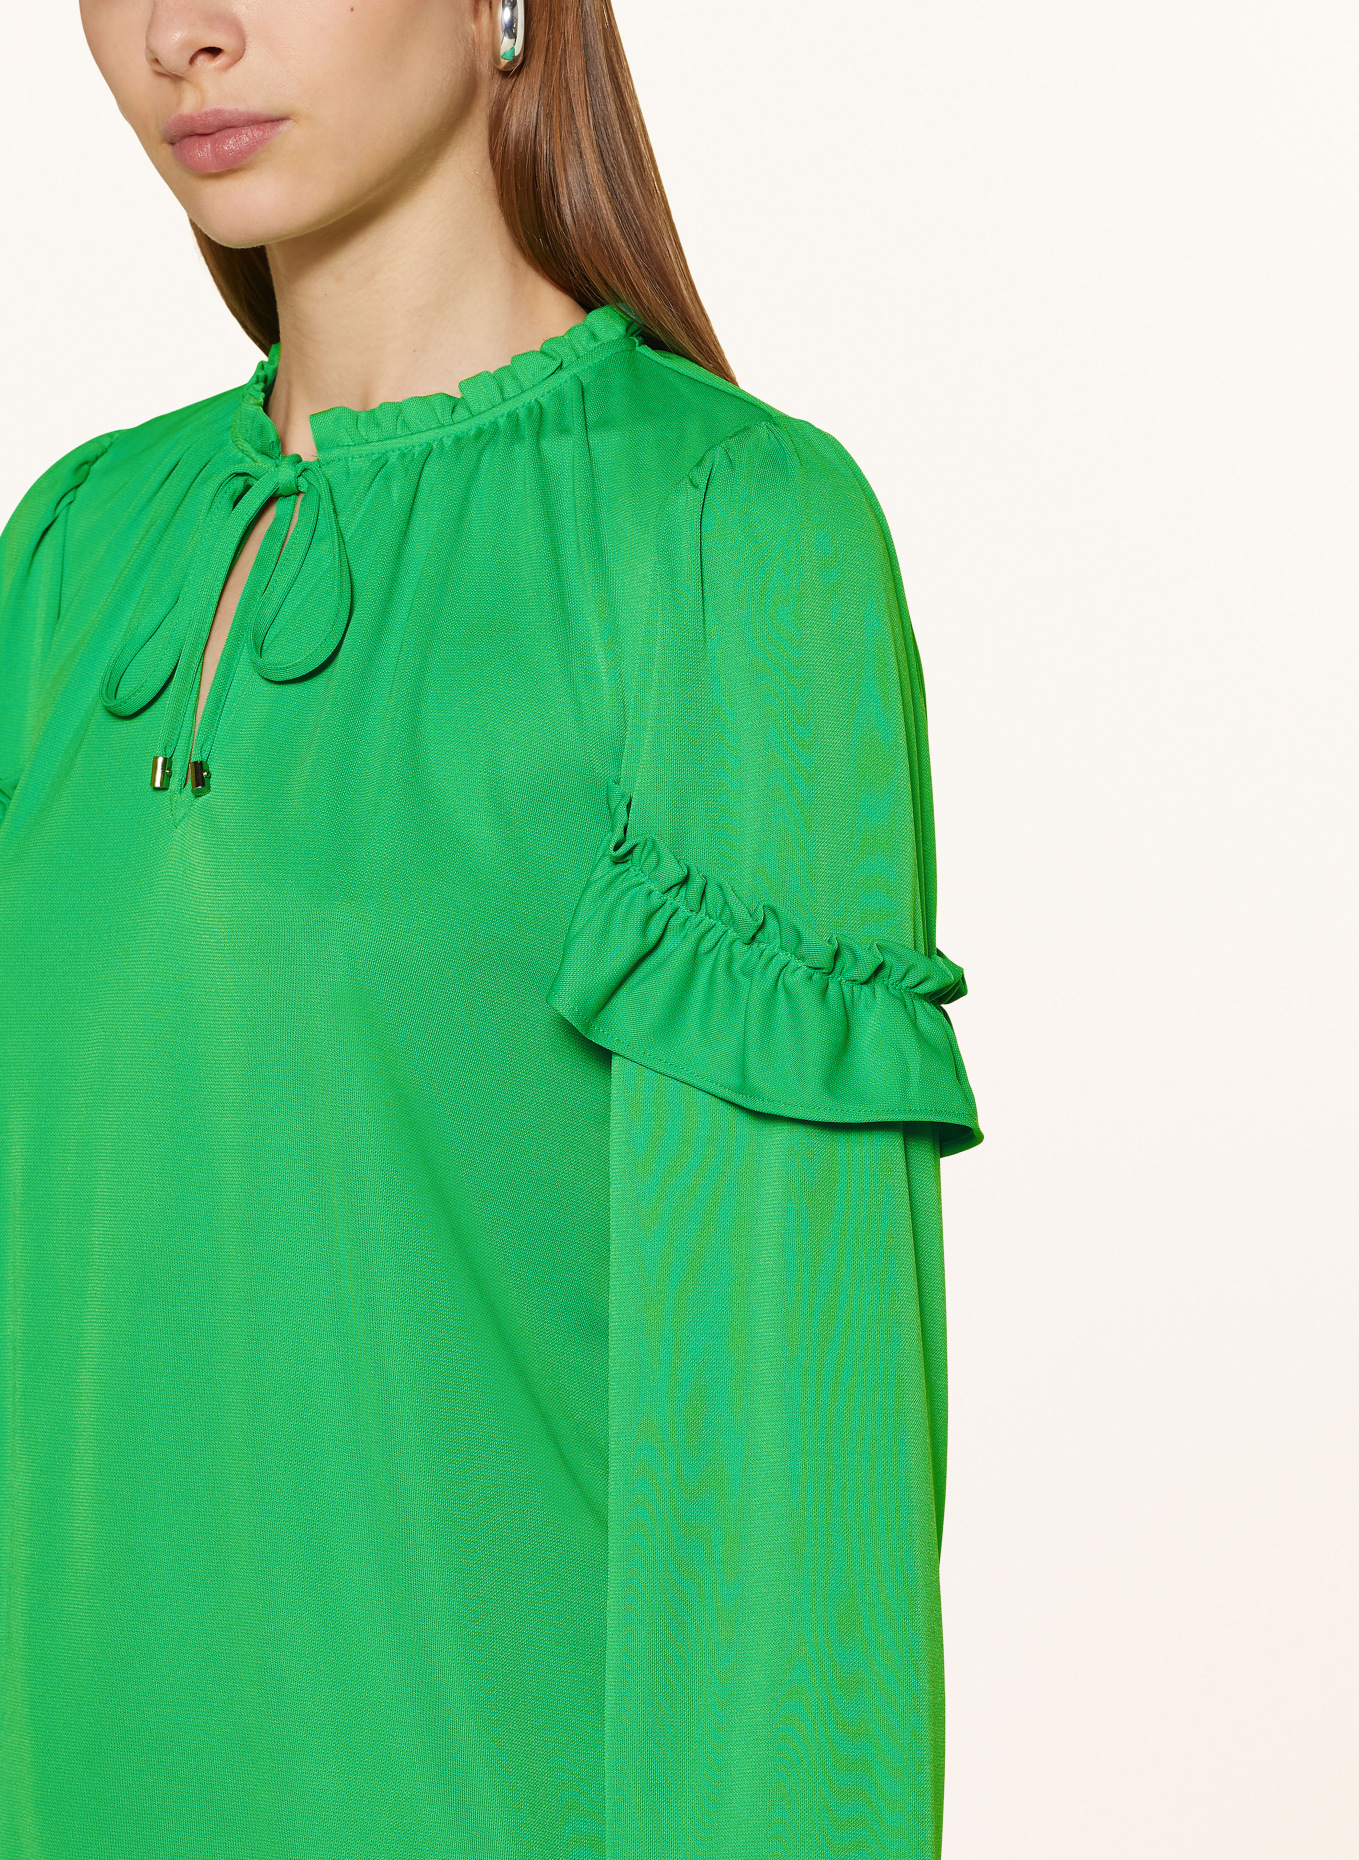 LAUREN RALPH LAUREN Shirt blouse in jersey with ruffles, Color: NEON GREEN (Image 4)